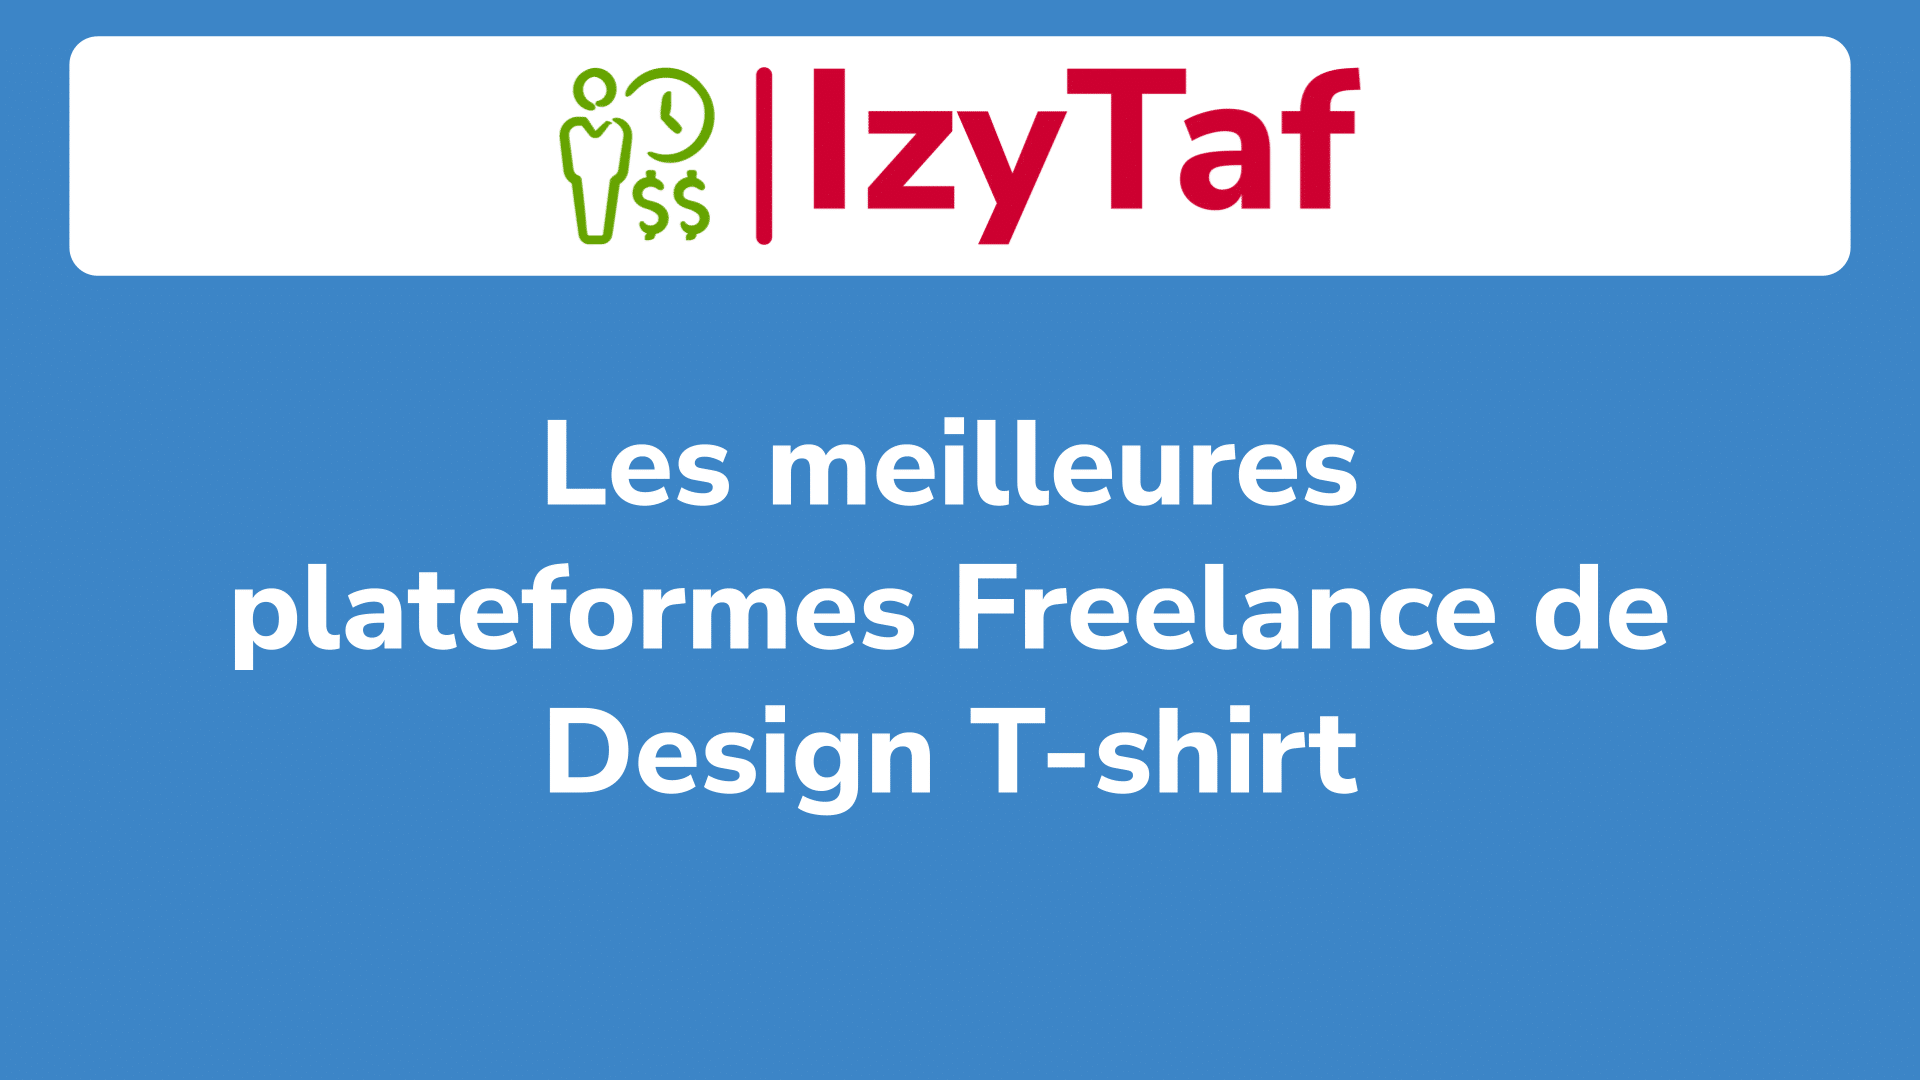 Les meilleures plateformes Freelance de Design T-shirt